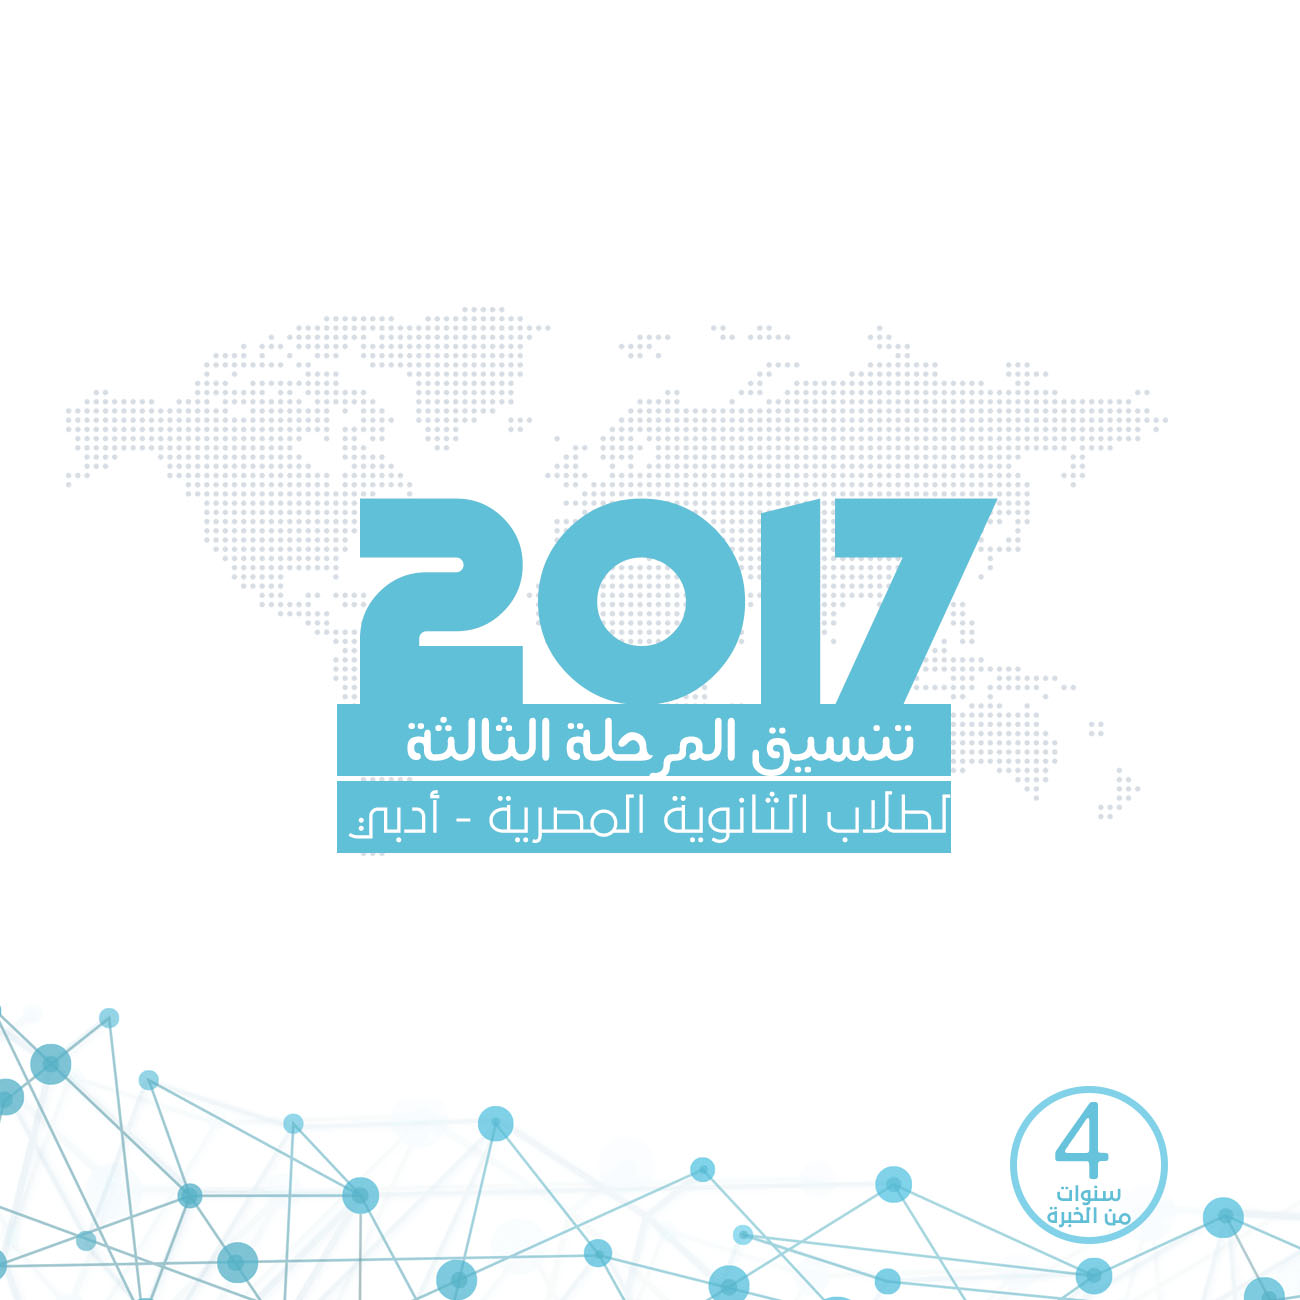 تنسيق المرحلة الثالثة للثانوية العامة المصرية أدبي مع النسبة المئوية 2017